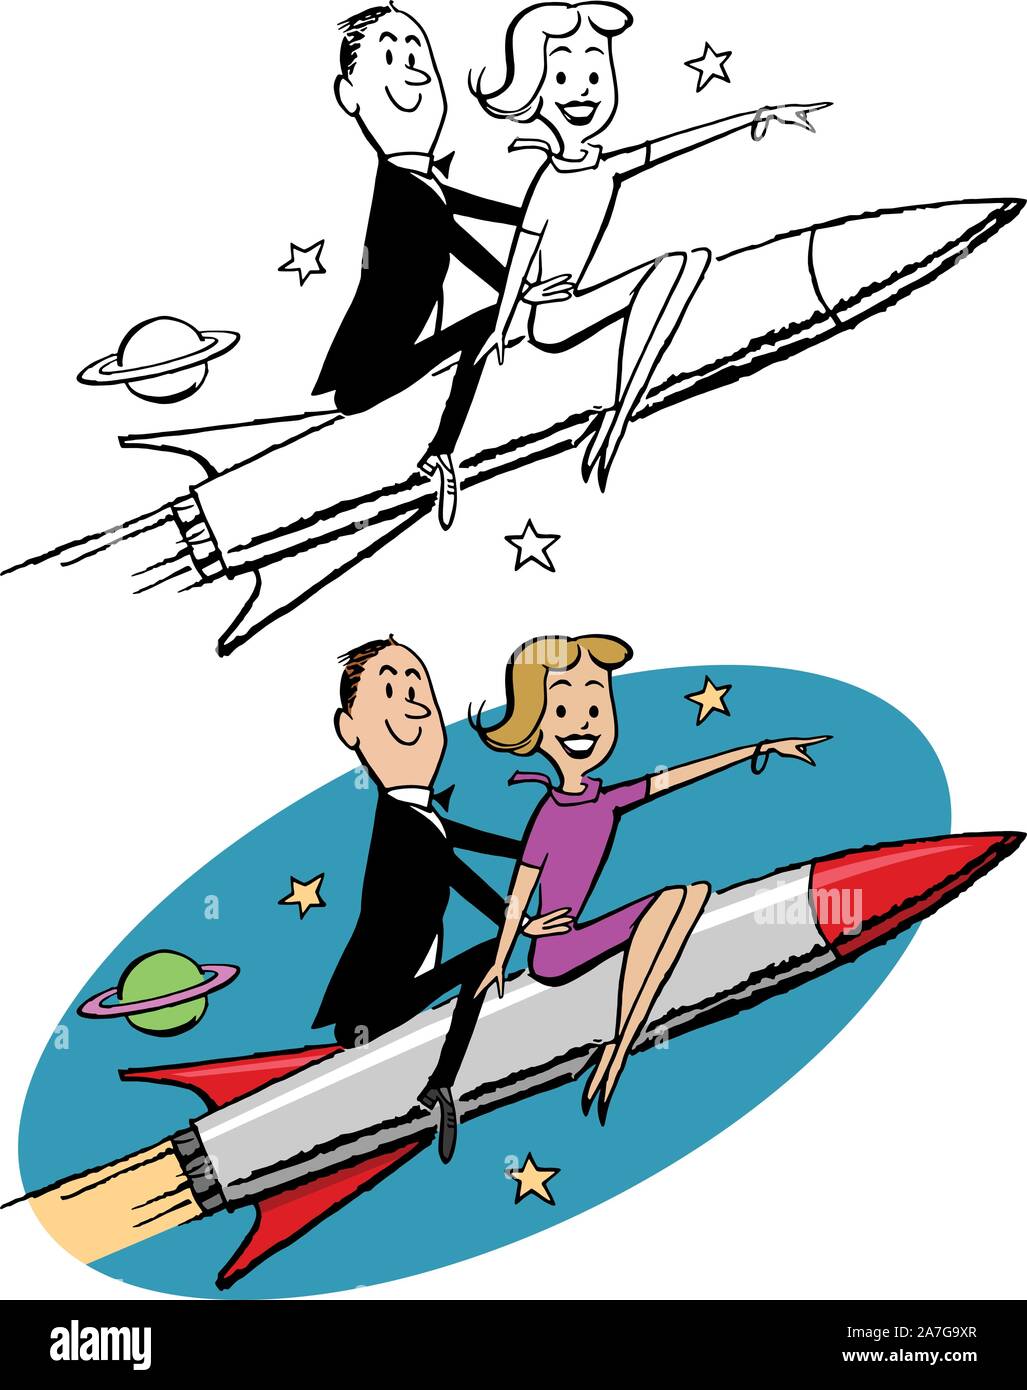 A cartoon of a couple riding a rocket ship into outer space. Stock Vector